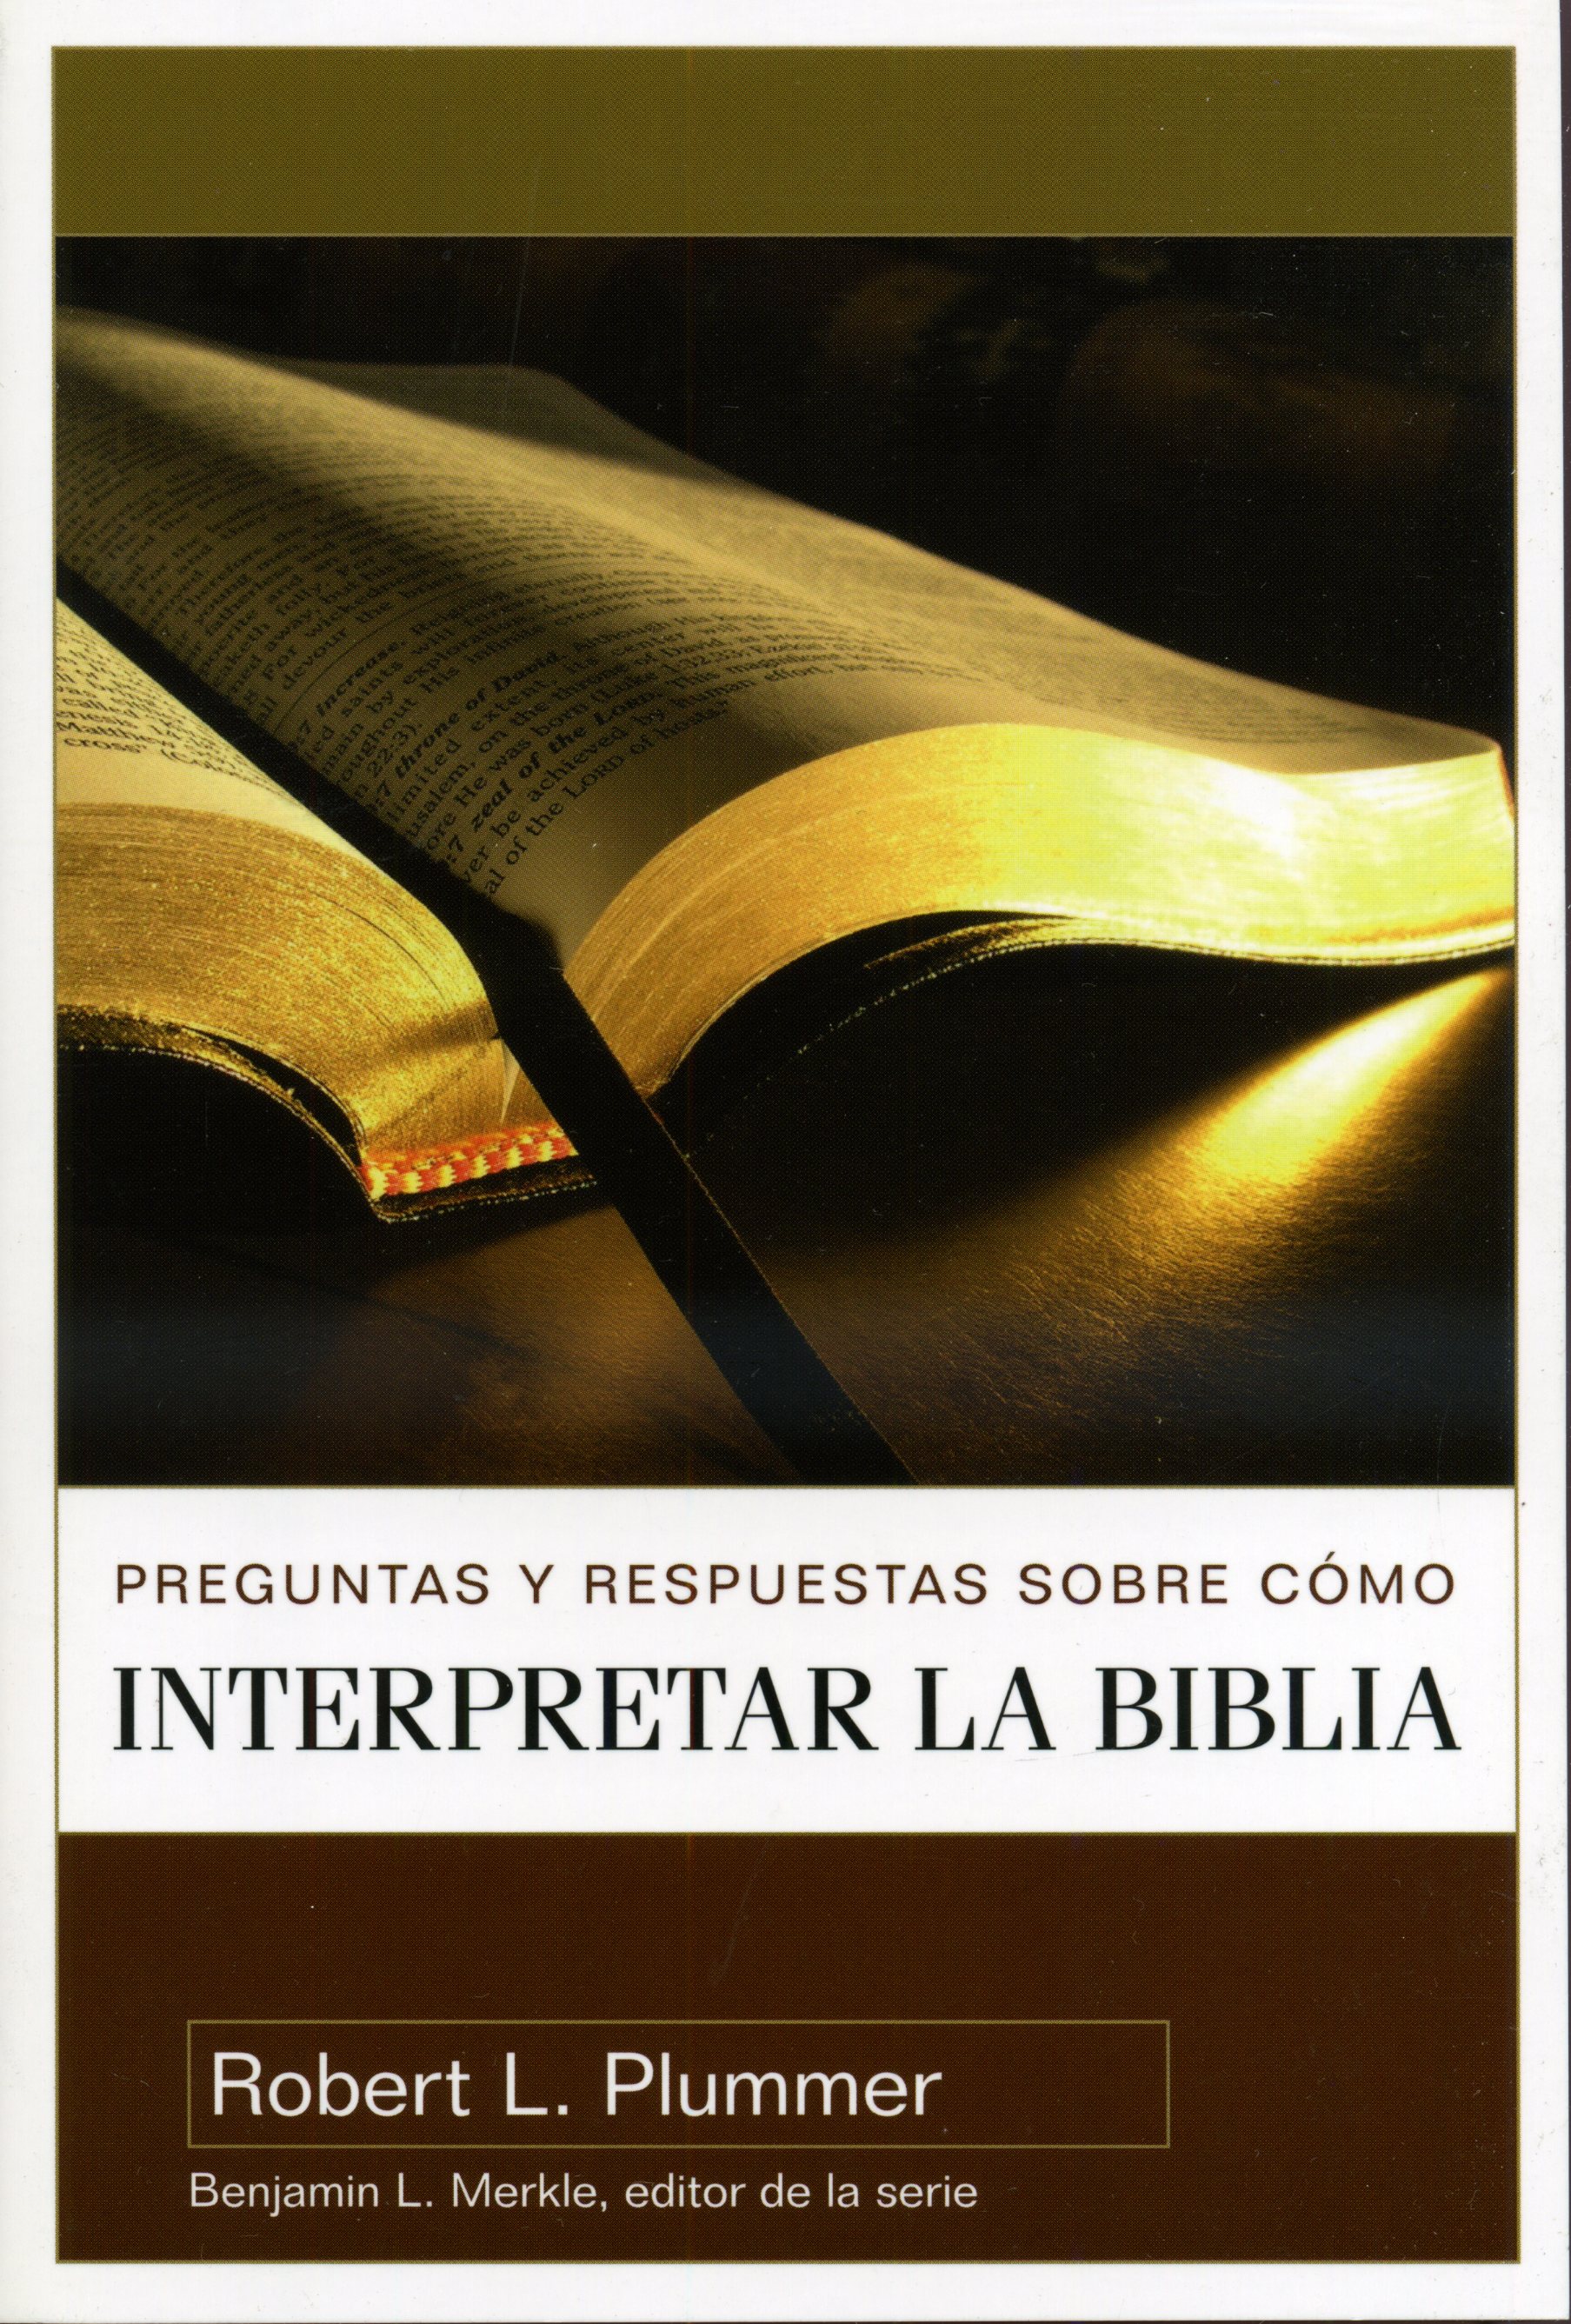 Interpretar la biblia